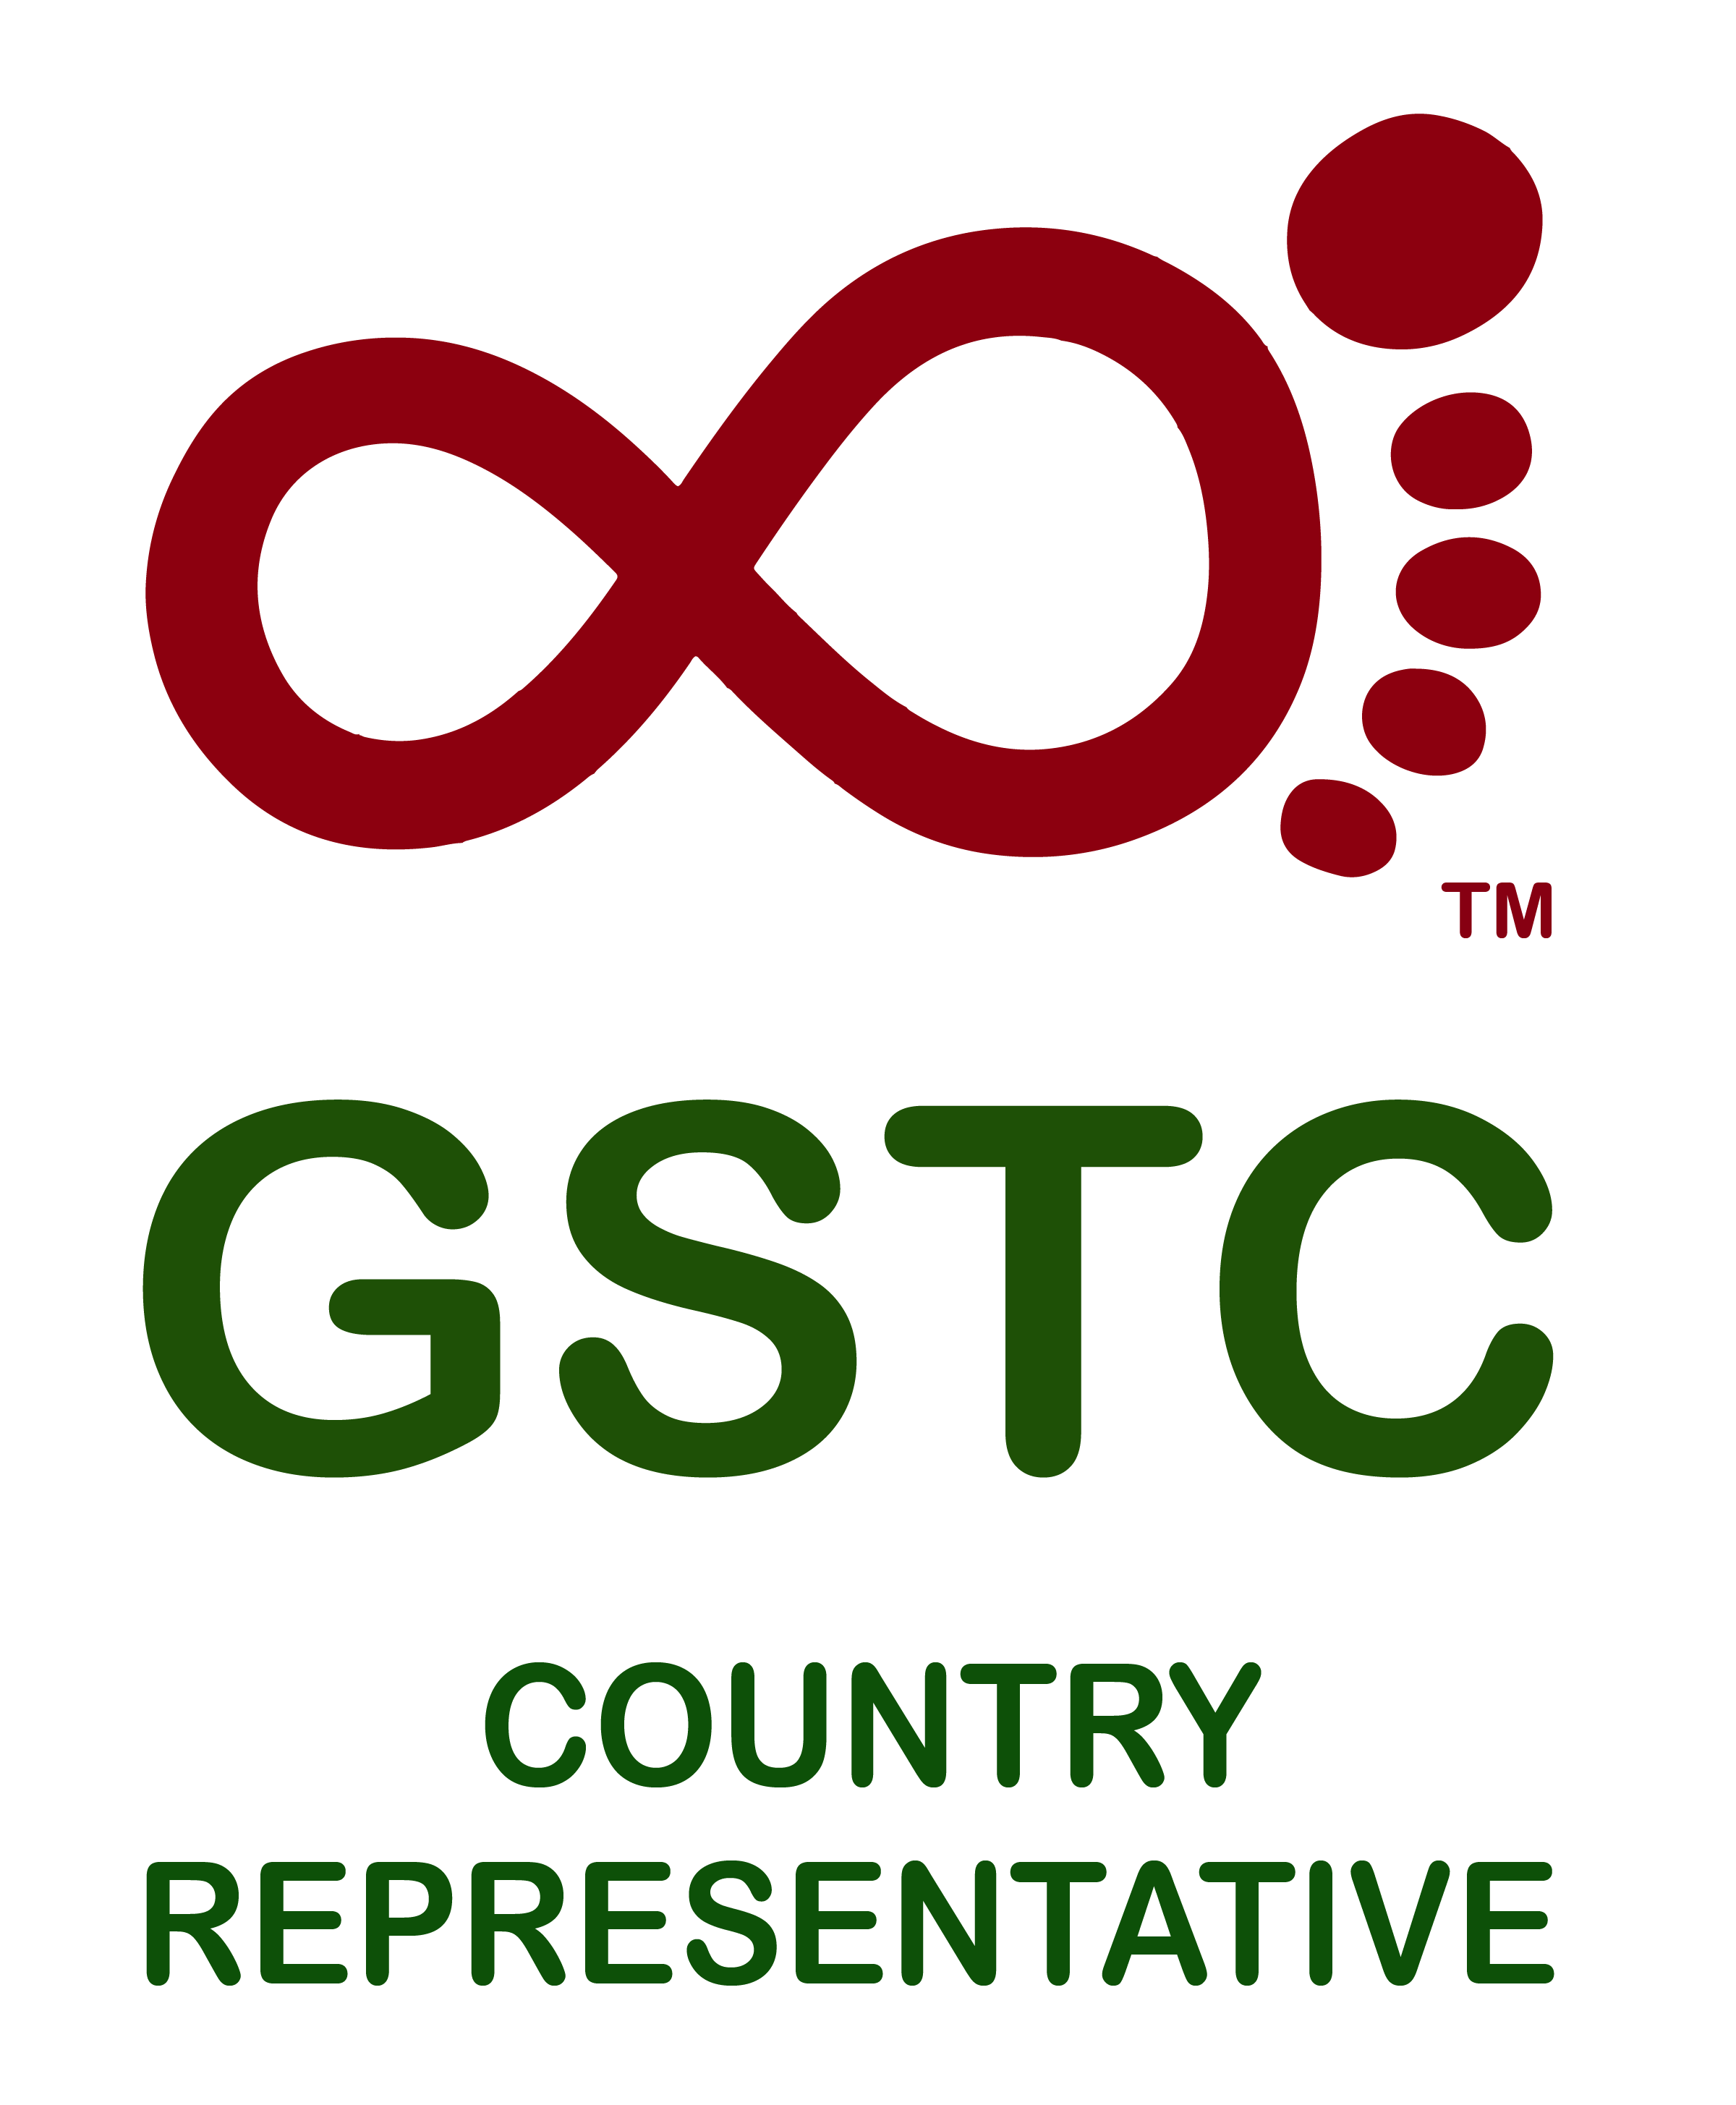 Representative Logo - GSTC Logo Country Representative Travel Tourism